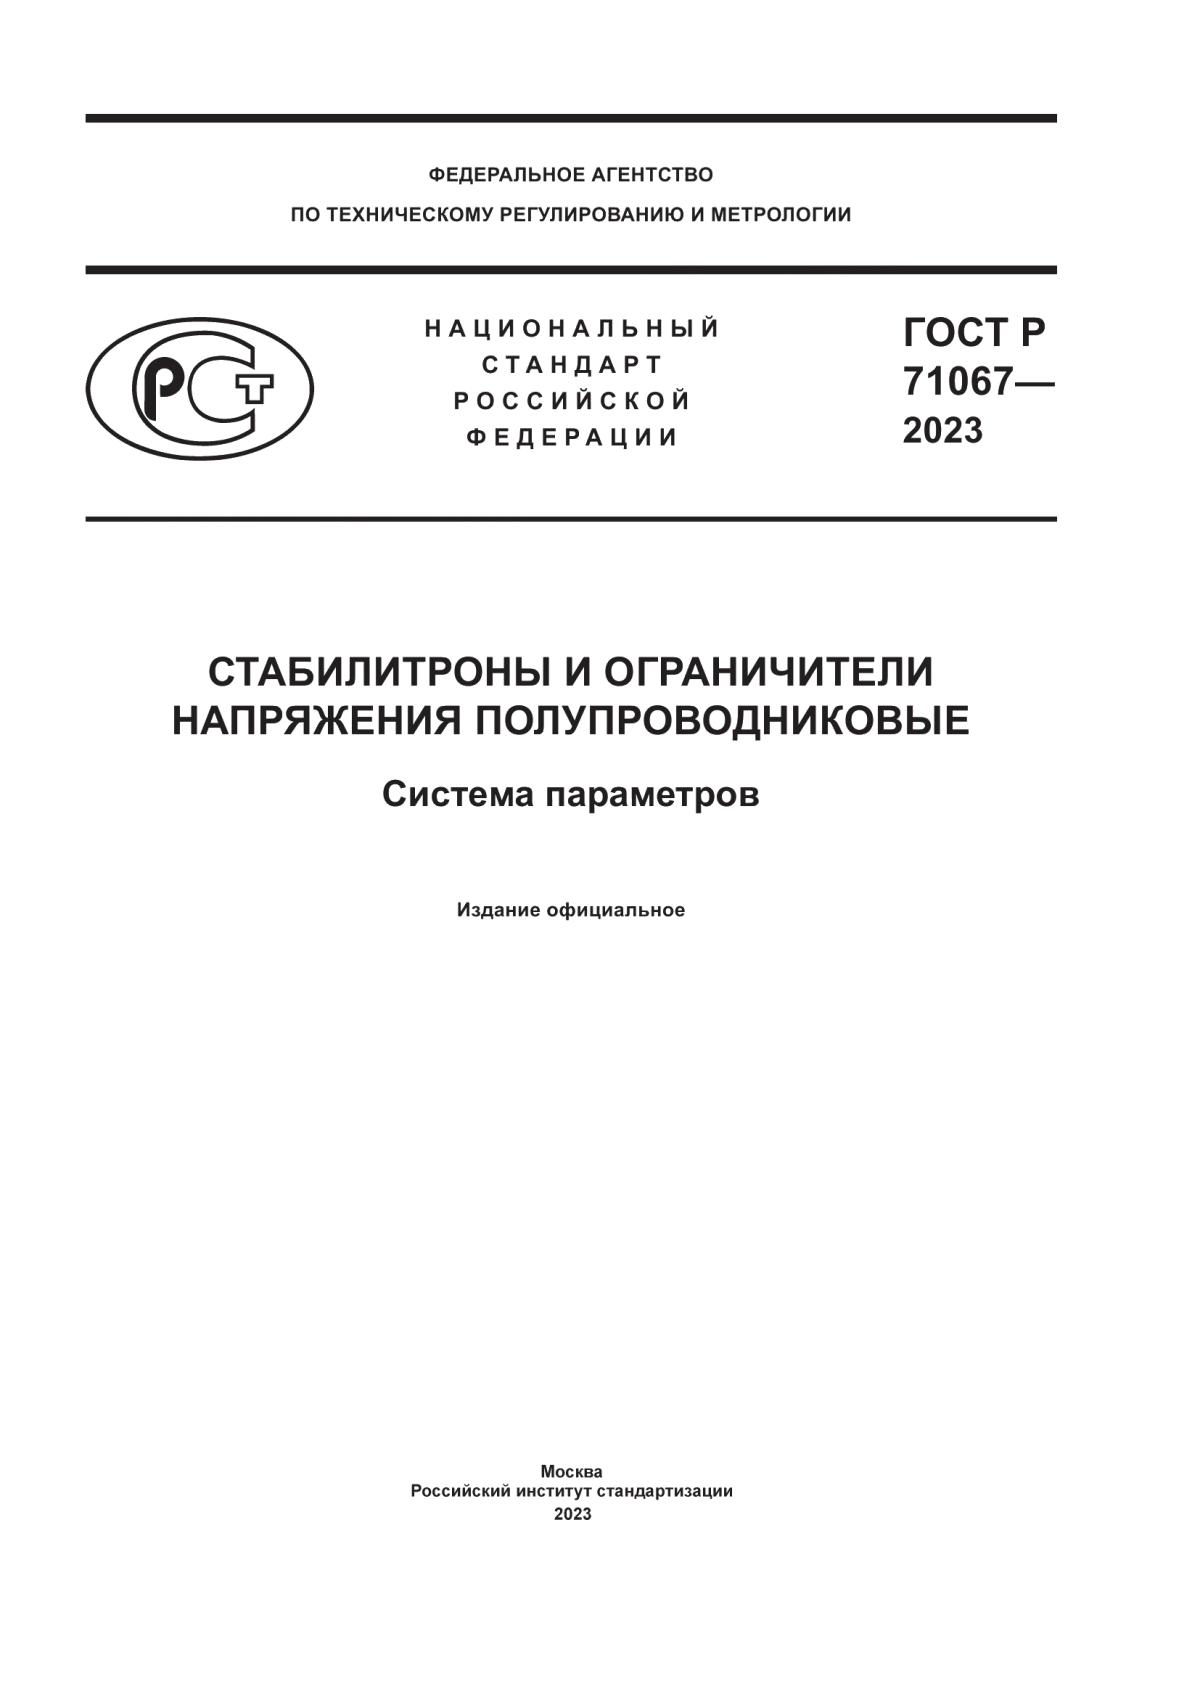 ГОСТ Р 71067-2023 Стабилитроны и ограничители напряжения полупроводниковые. Система параметров